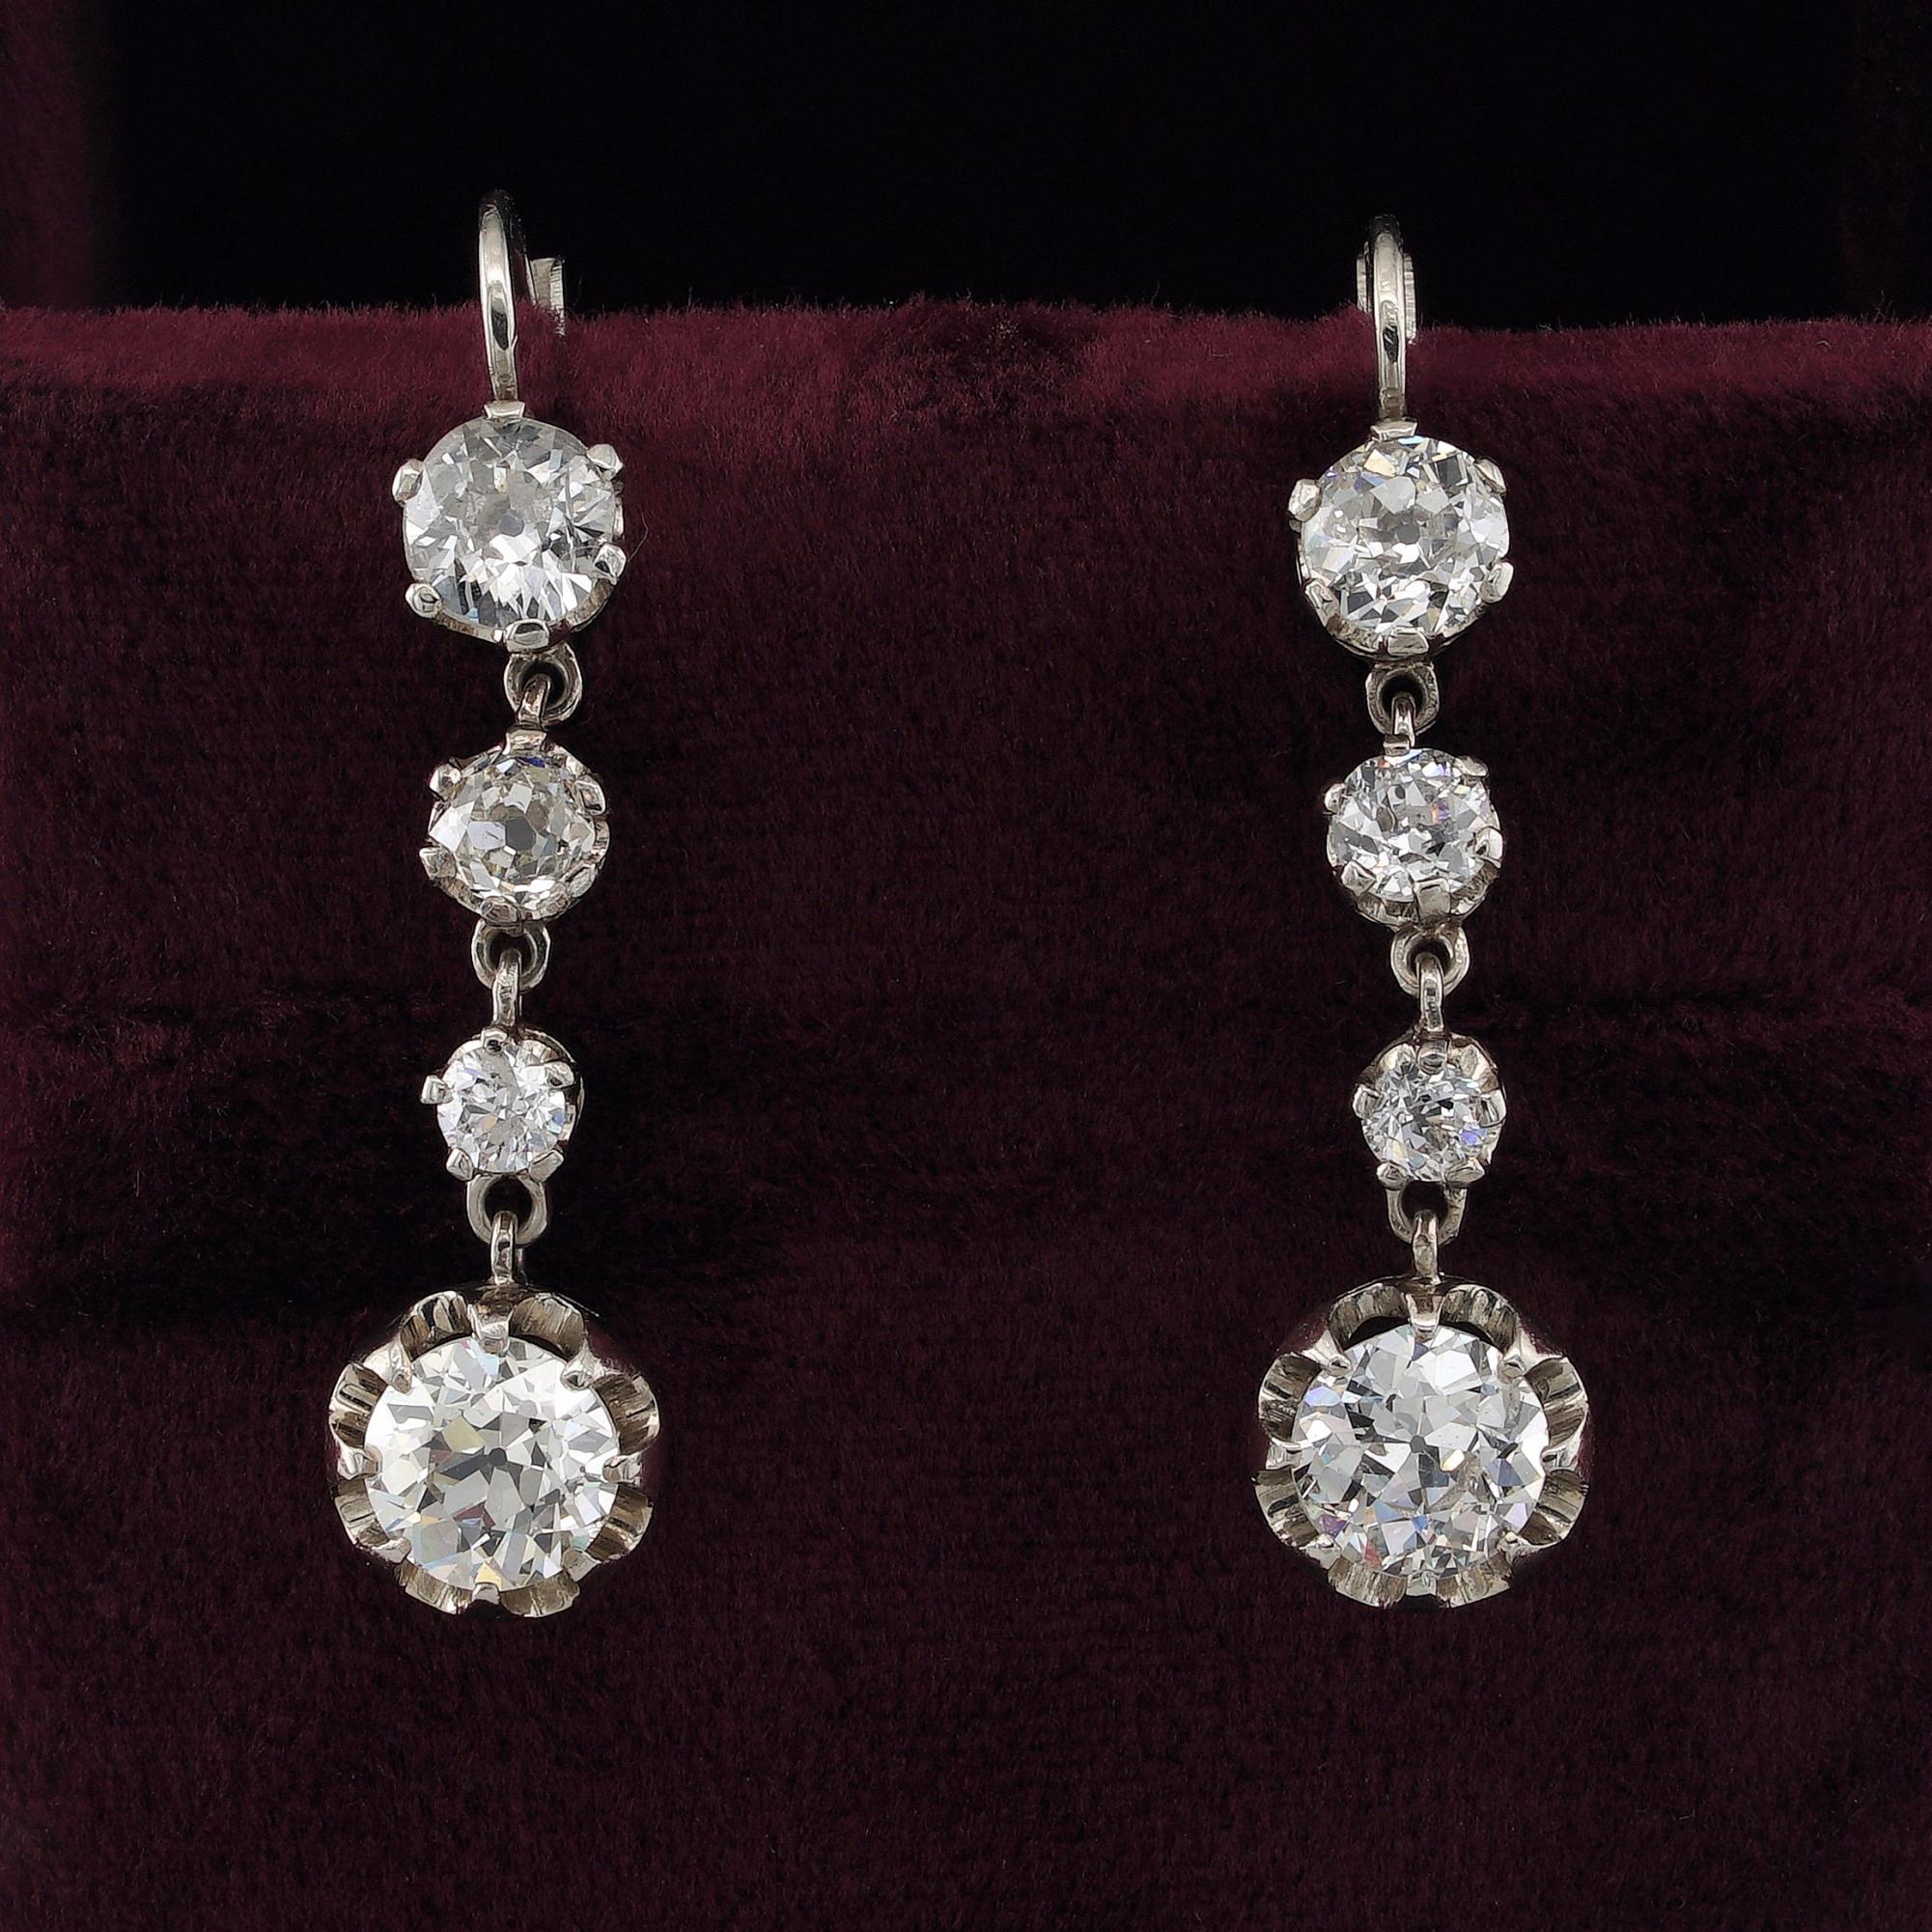 Stilvolles Art-Déco-Statement
Glitzernde und sexy Art Deco Diamond Swing Line Ohrringe
Ein stilvolles Statement der 20er Jahre, das die volle Pracht bewahrt, um mit Schönheit etwas Besonderes zu erfüllen
Echt 1925 ca mit italienischen Punzen der